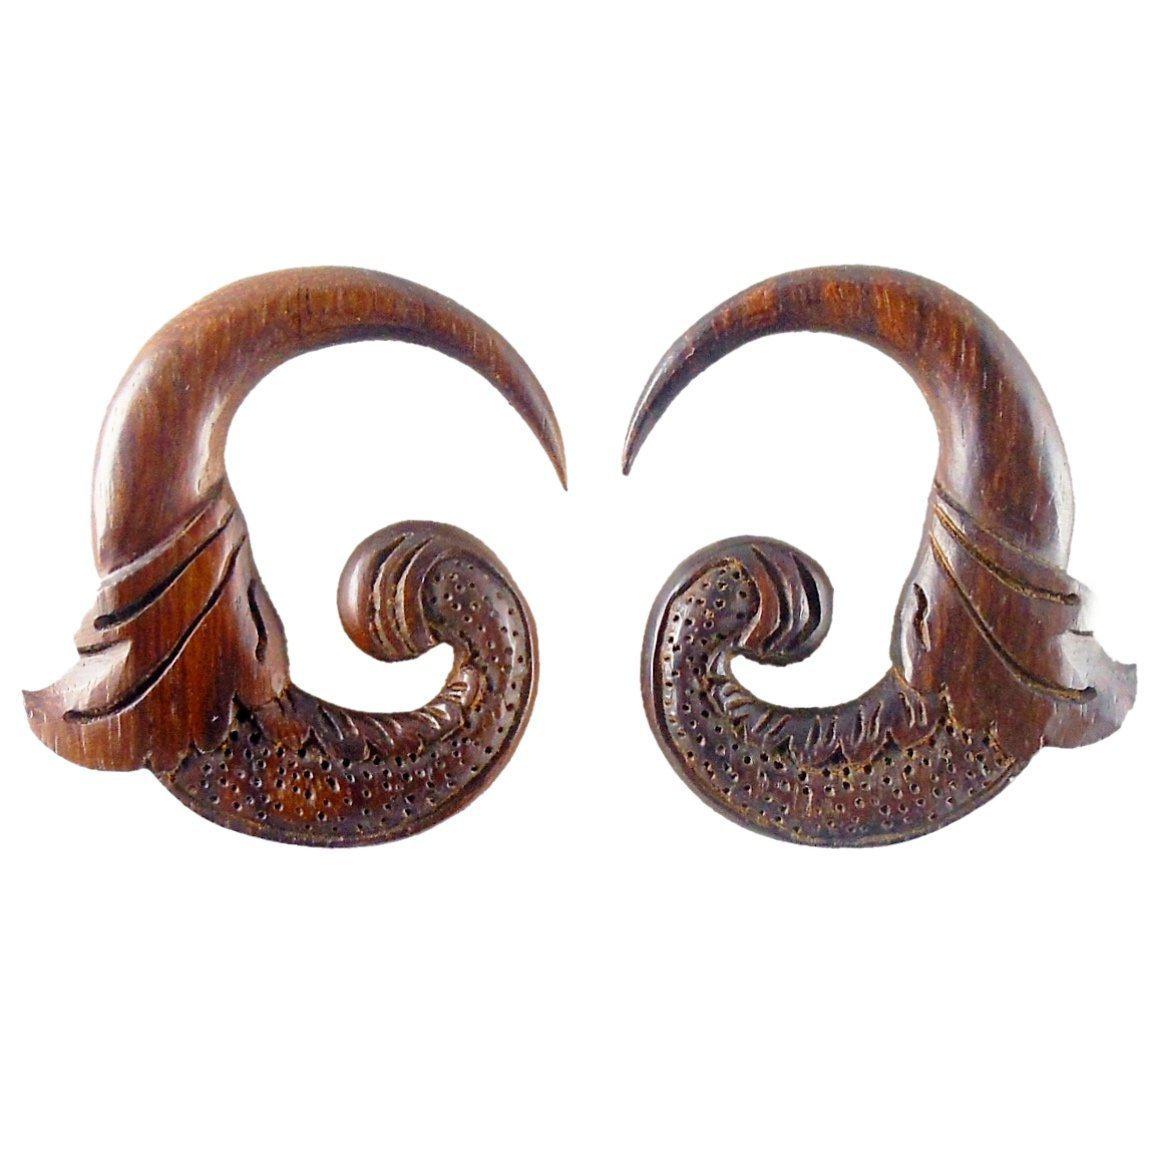 Wood Body Jewelry :|: Nectar. 0 gauge earrings, wood.